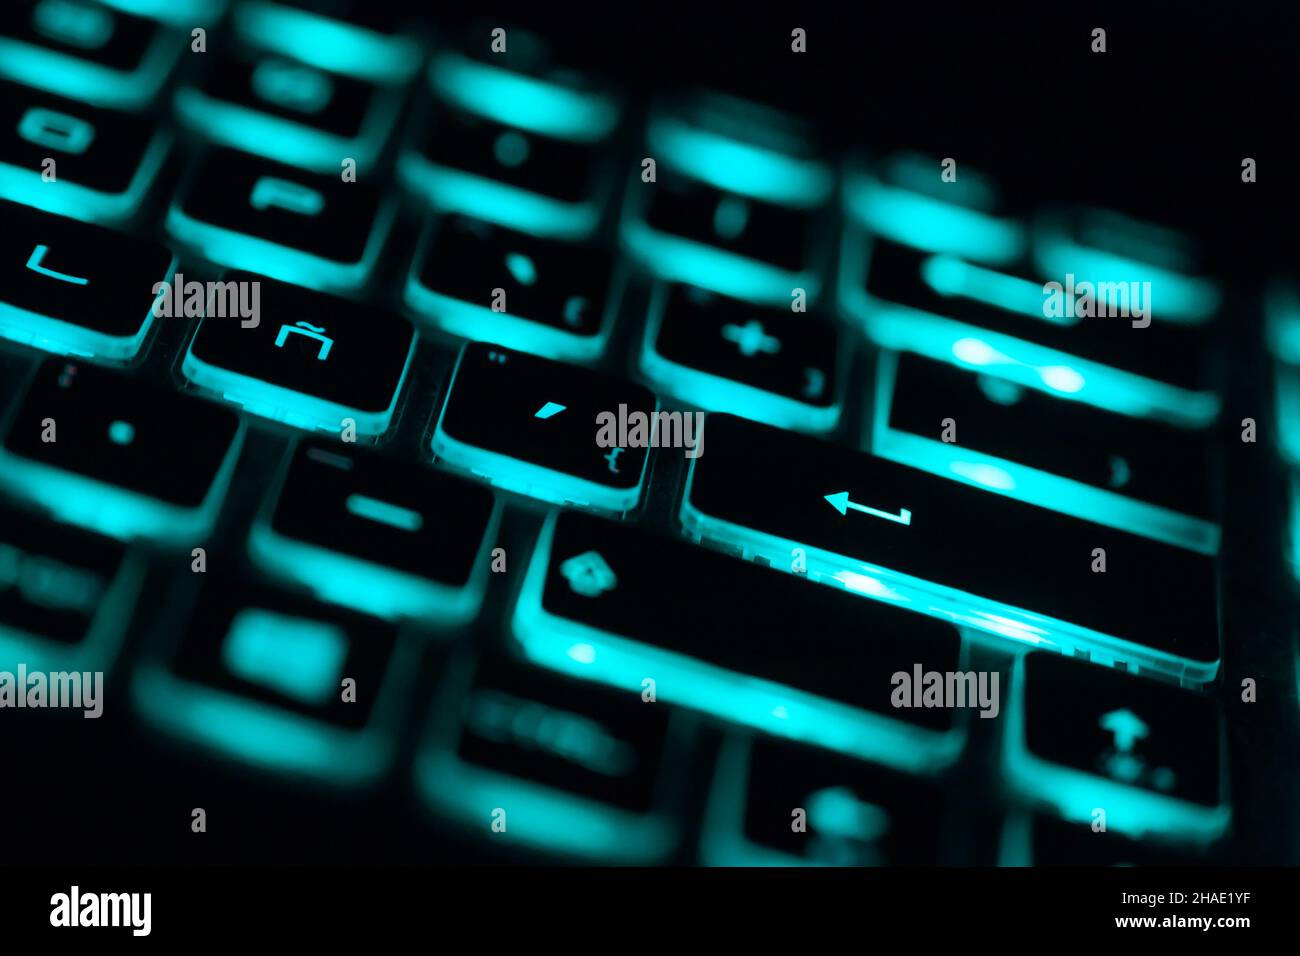 Nahaufnahme der Beleuchtung der Laptop-Tastatur, beleuchtete Tastatur.  Aquamarin-Farblicht Stockfotografie - Alamy